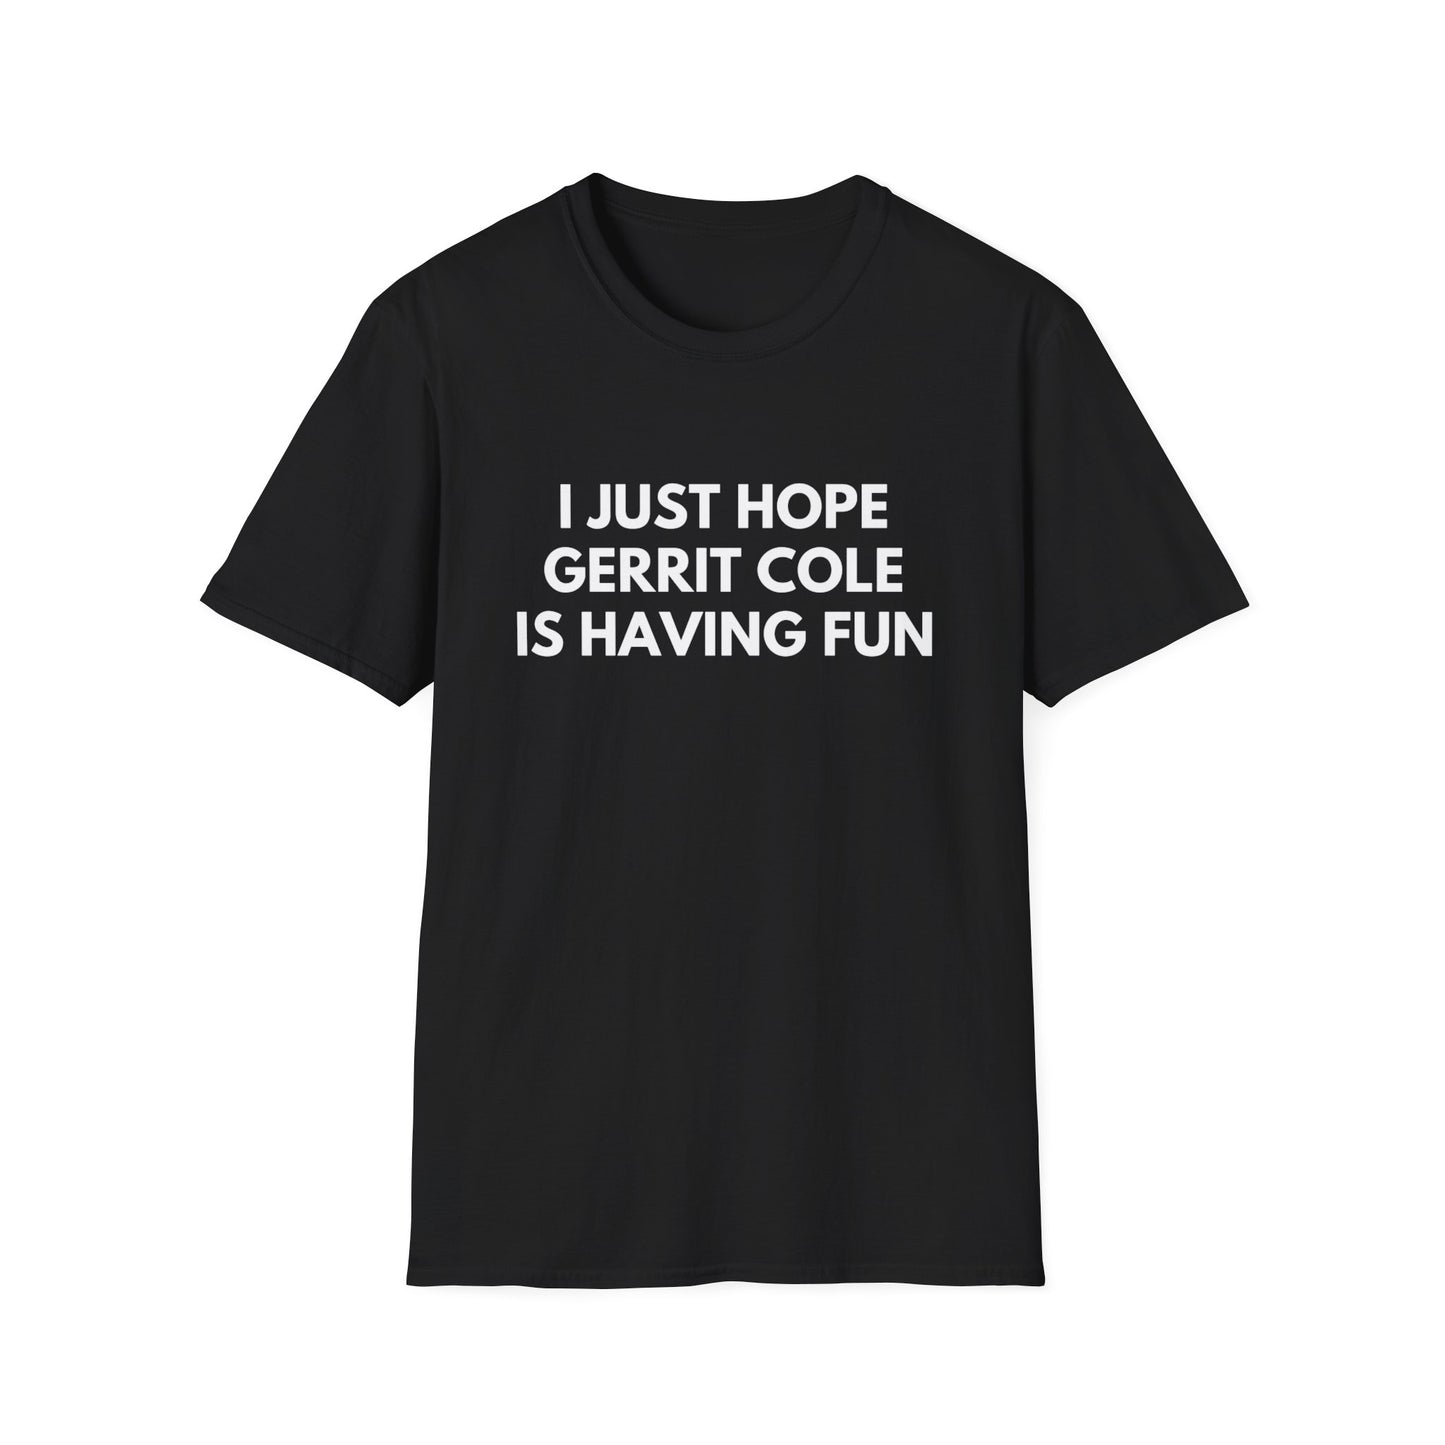 Gerrit Cole Having Fun - Unisex T-shirt